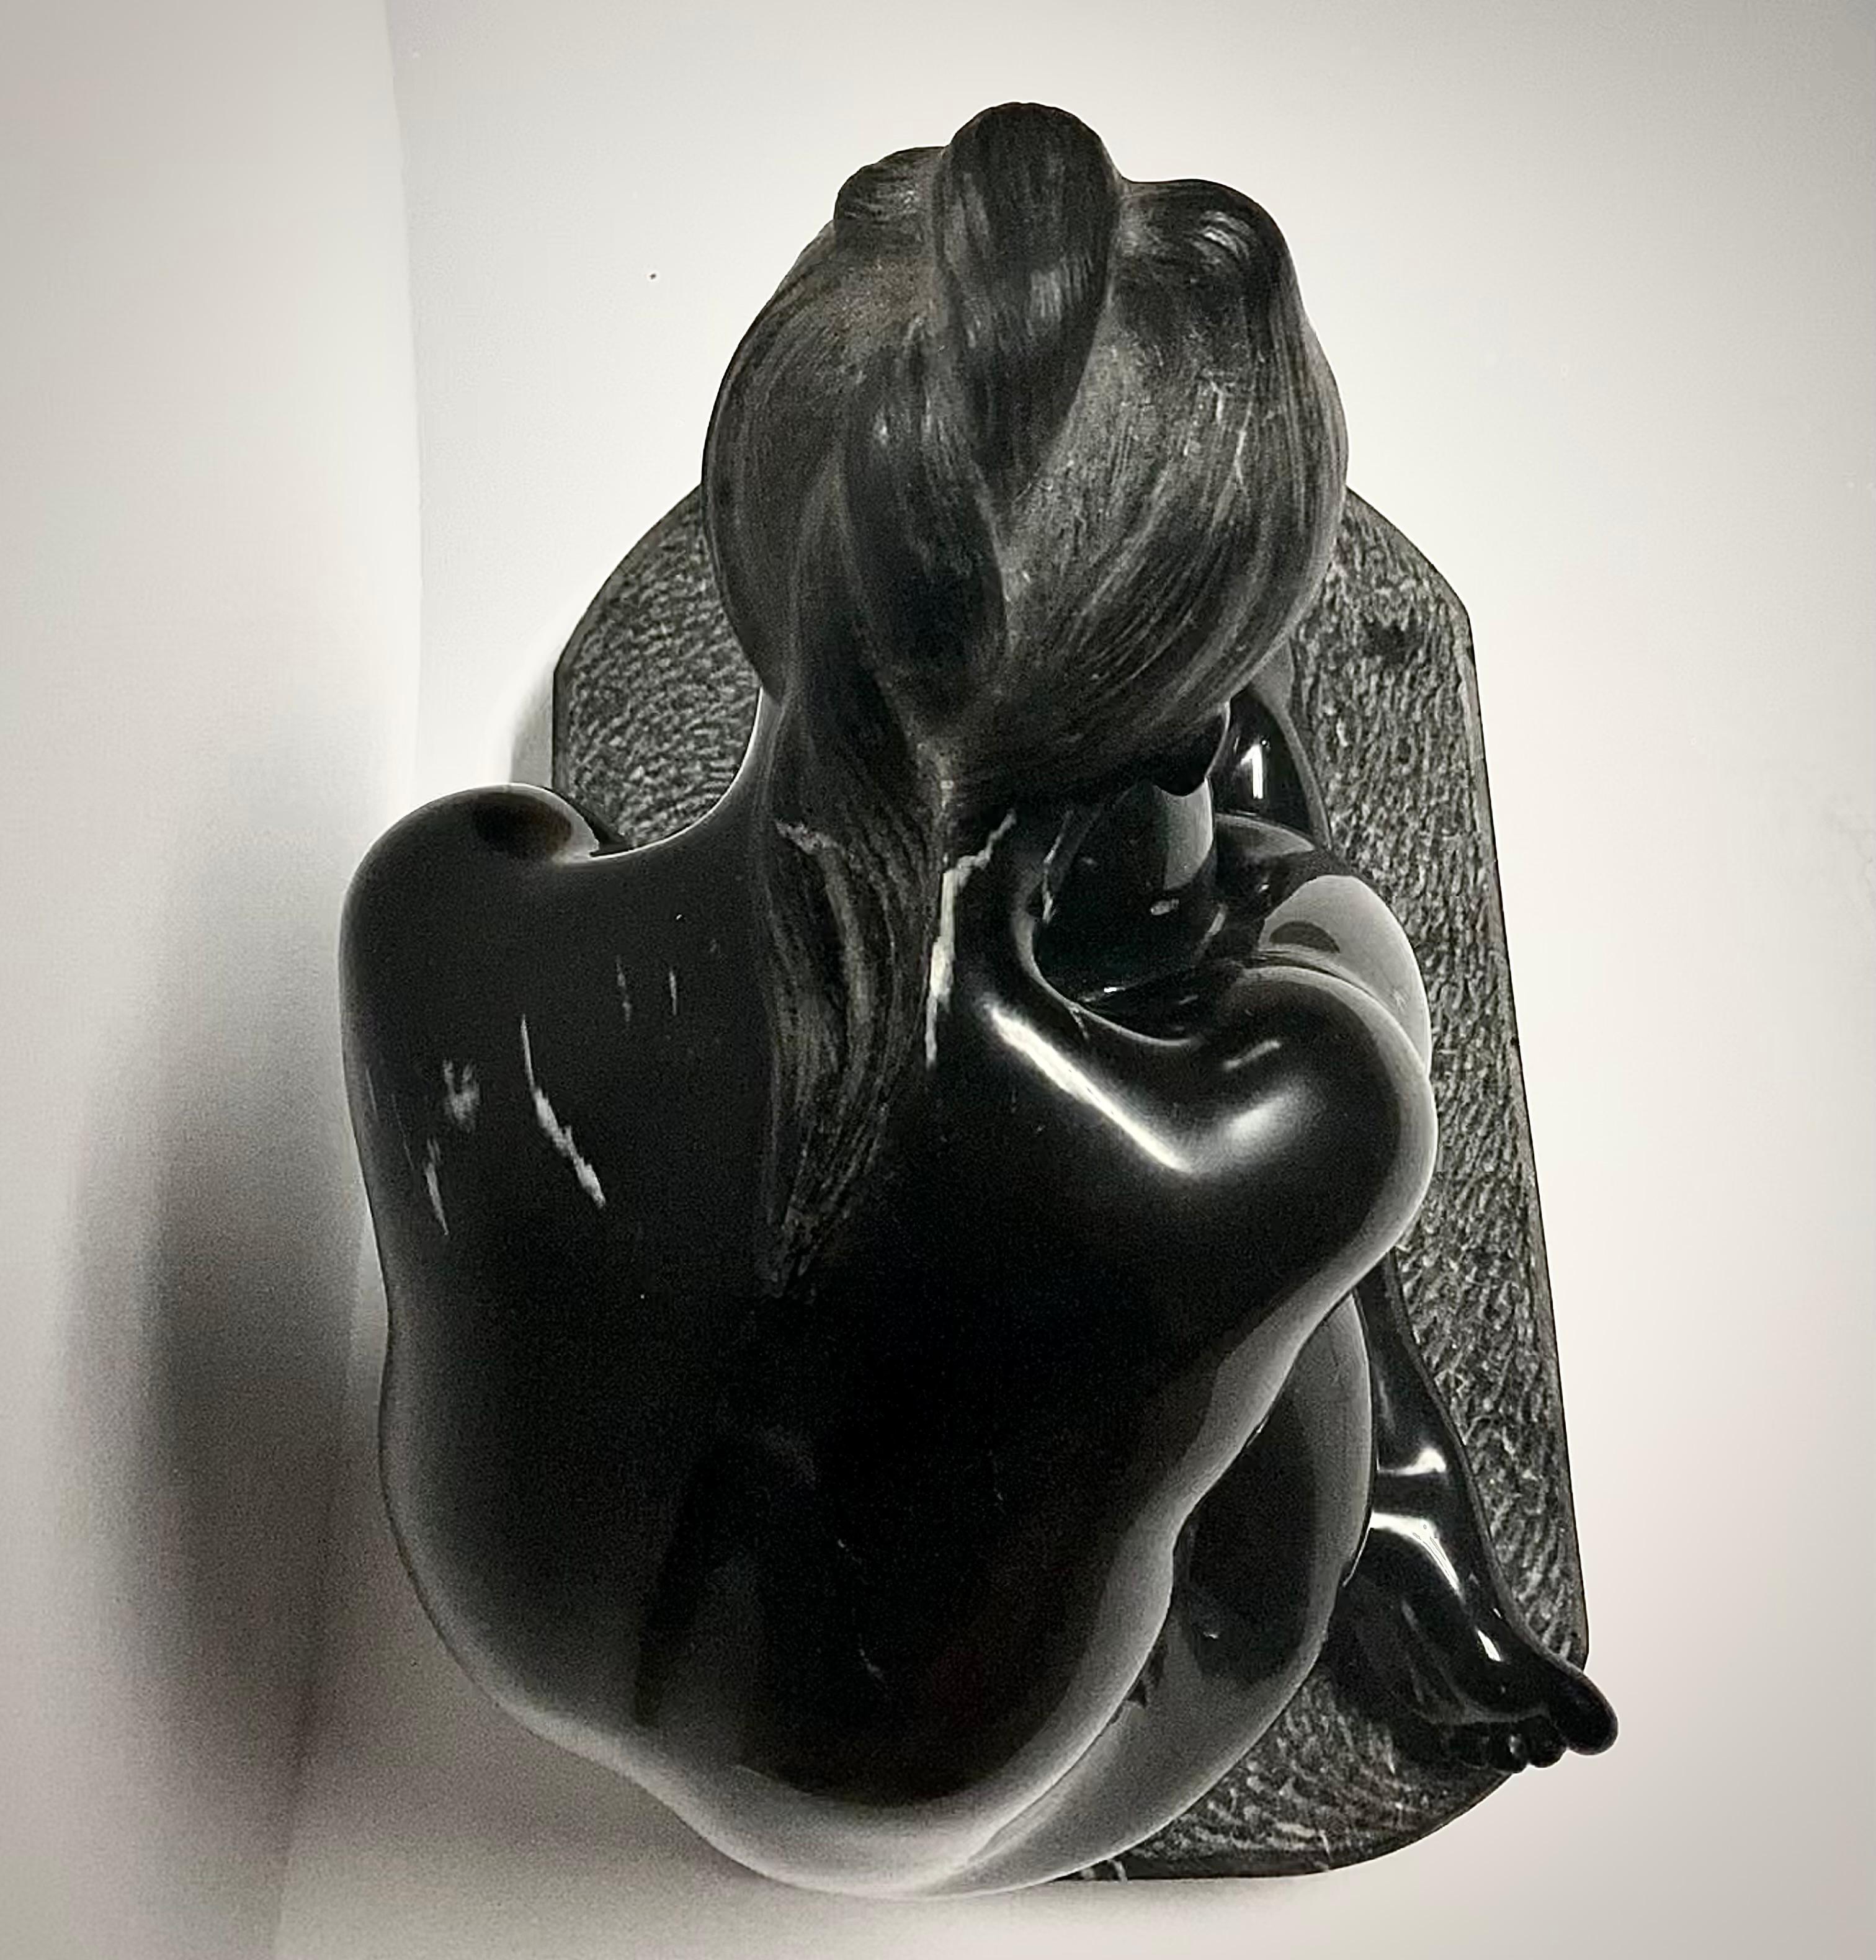 Untitled - Black Nude Sculpture by Felipe Castañeda